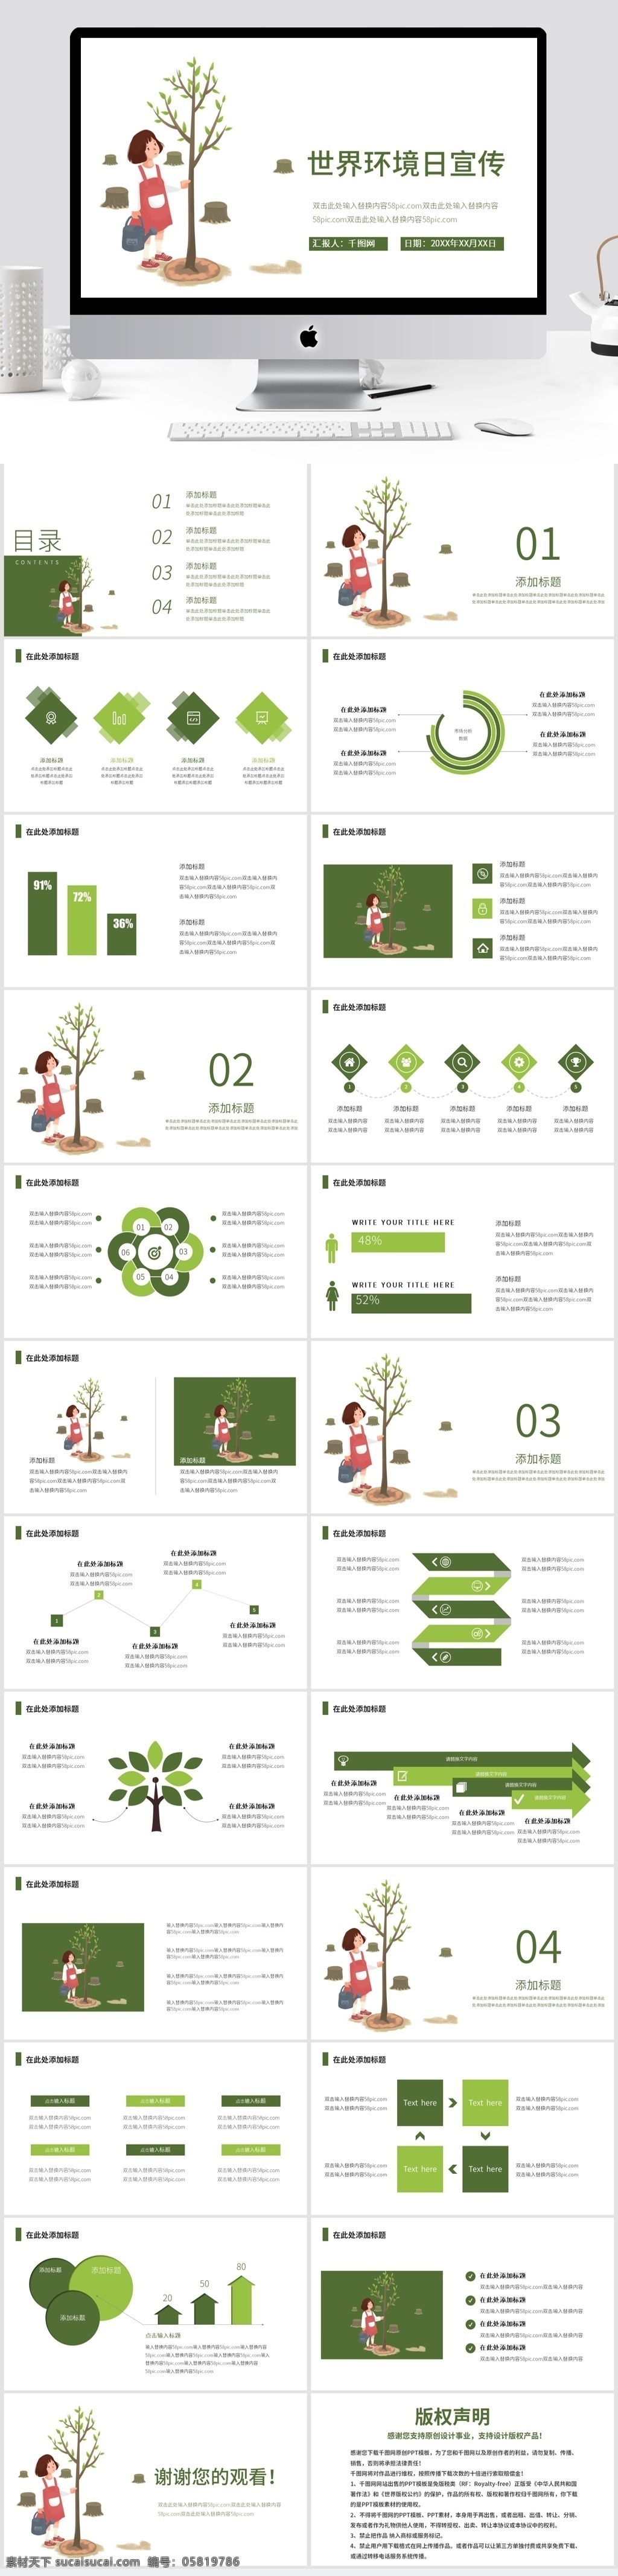 绿色 简约 世界环境日 公益 宣传 模板 ppt模板 保护环境 公益宣传 植树 活动策划